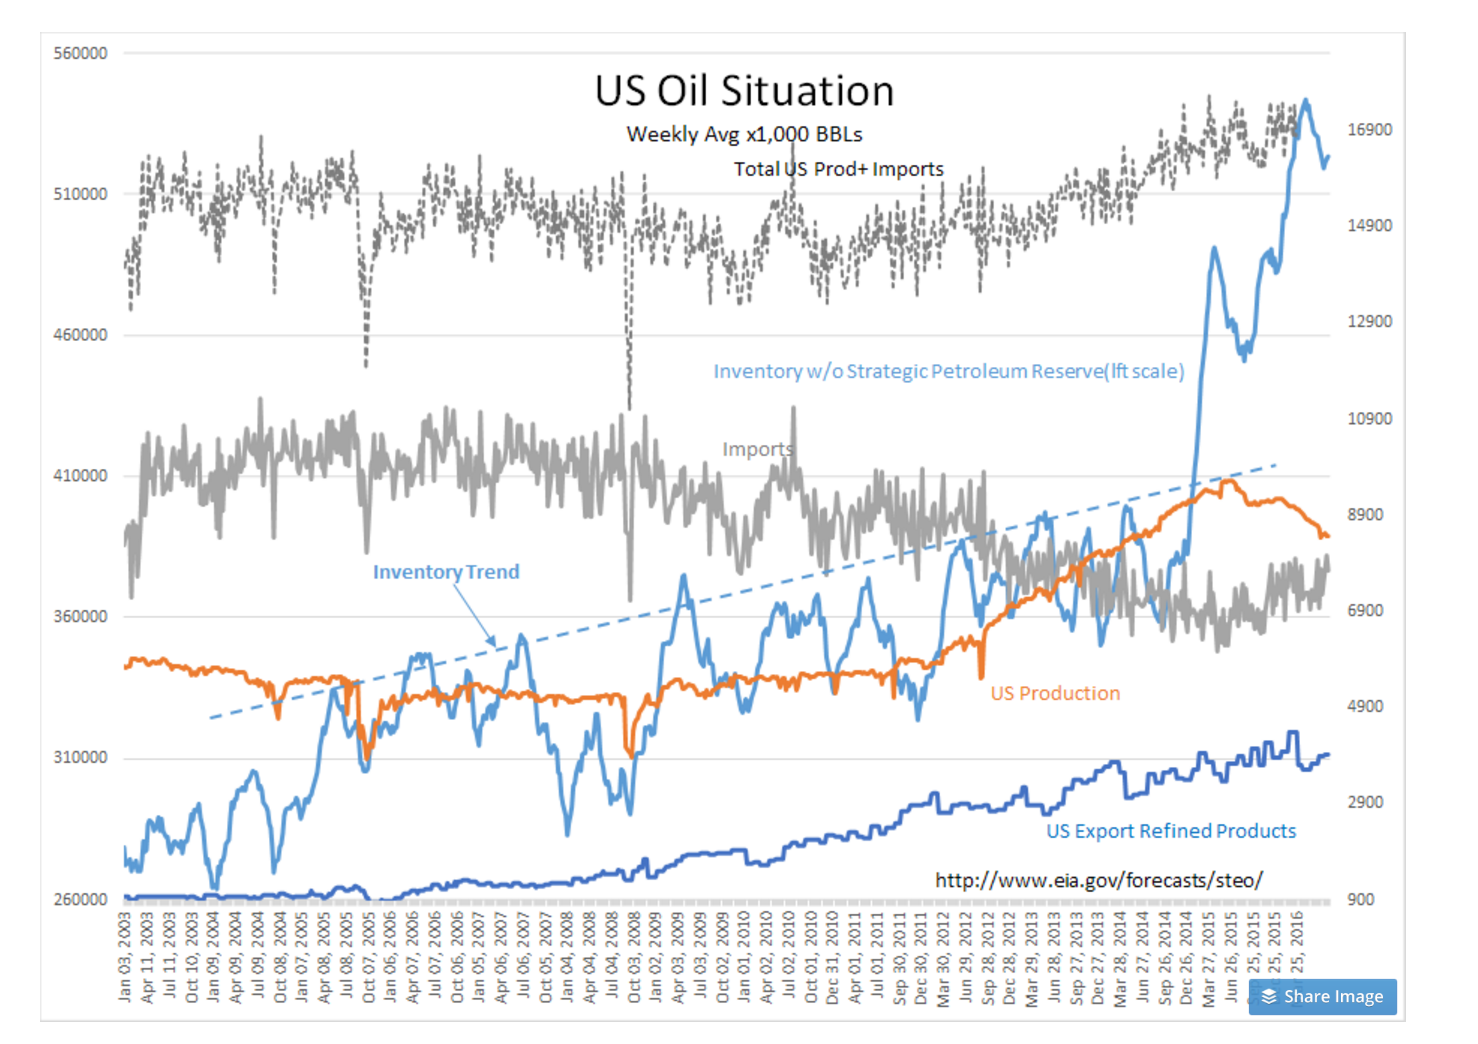 US Oil Stuation